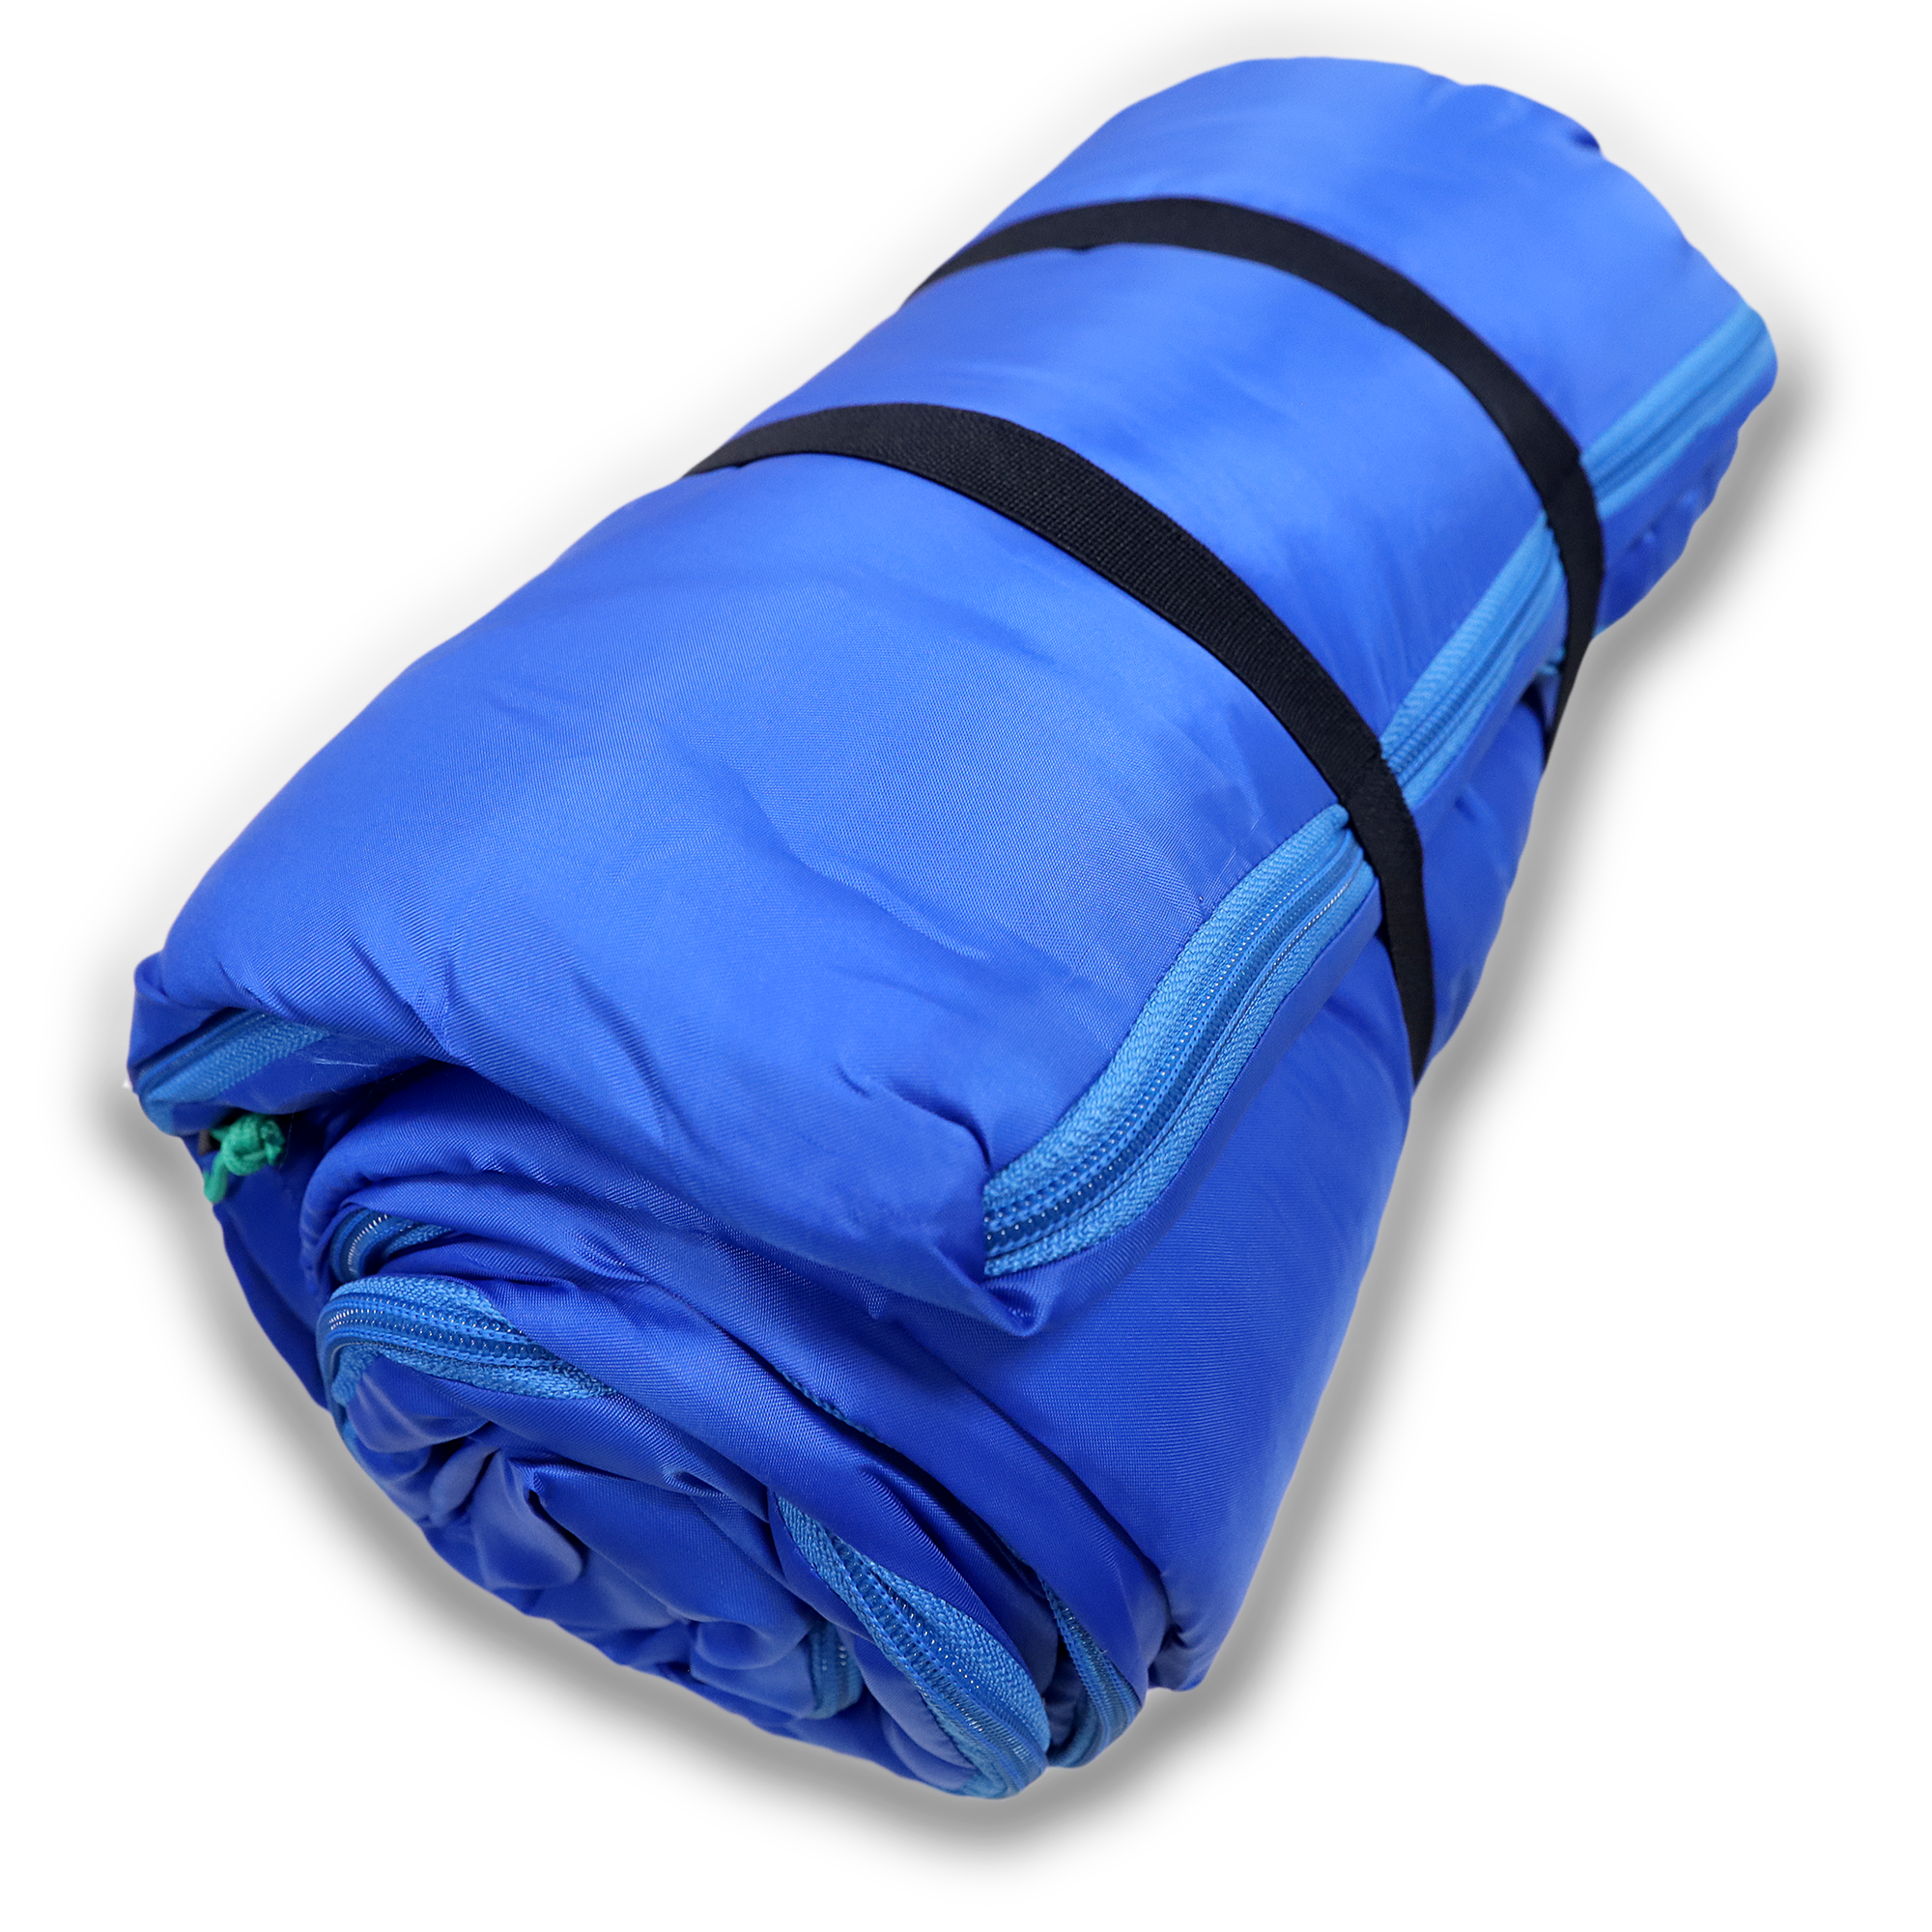  CL140 Rectangular Sleeping bag 